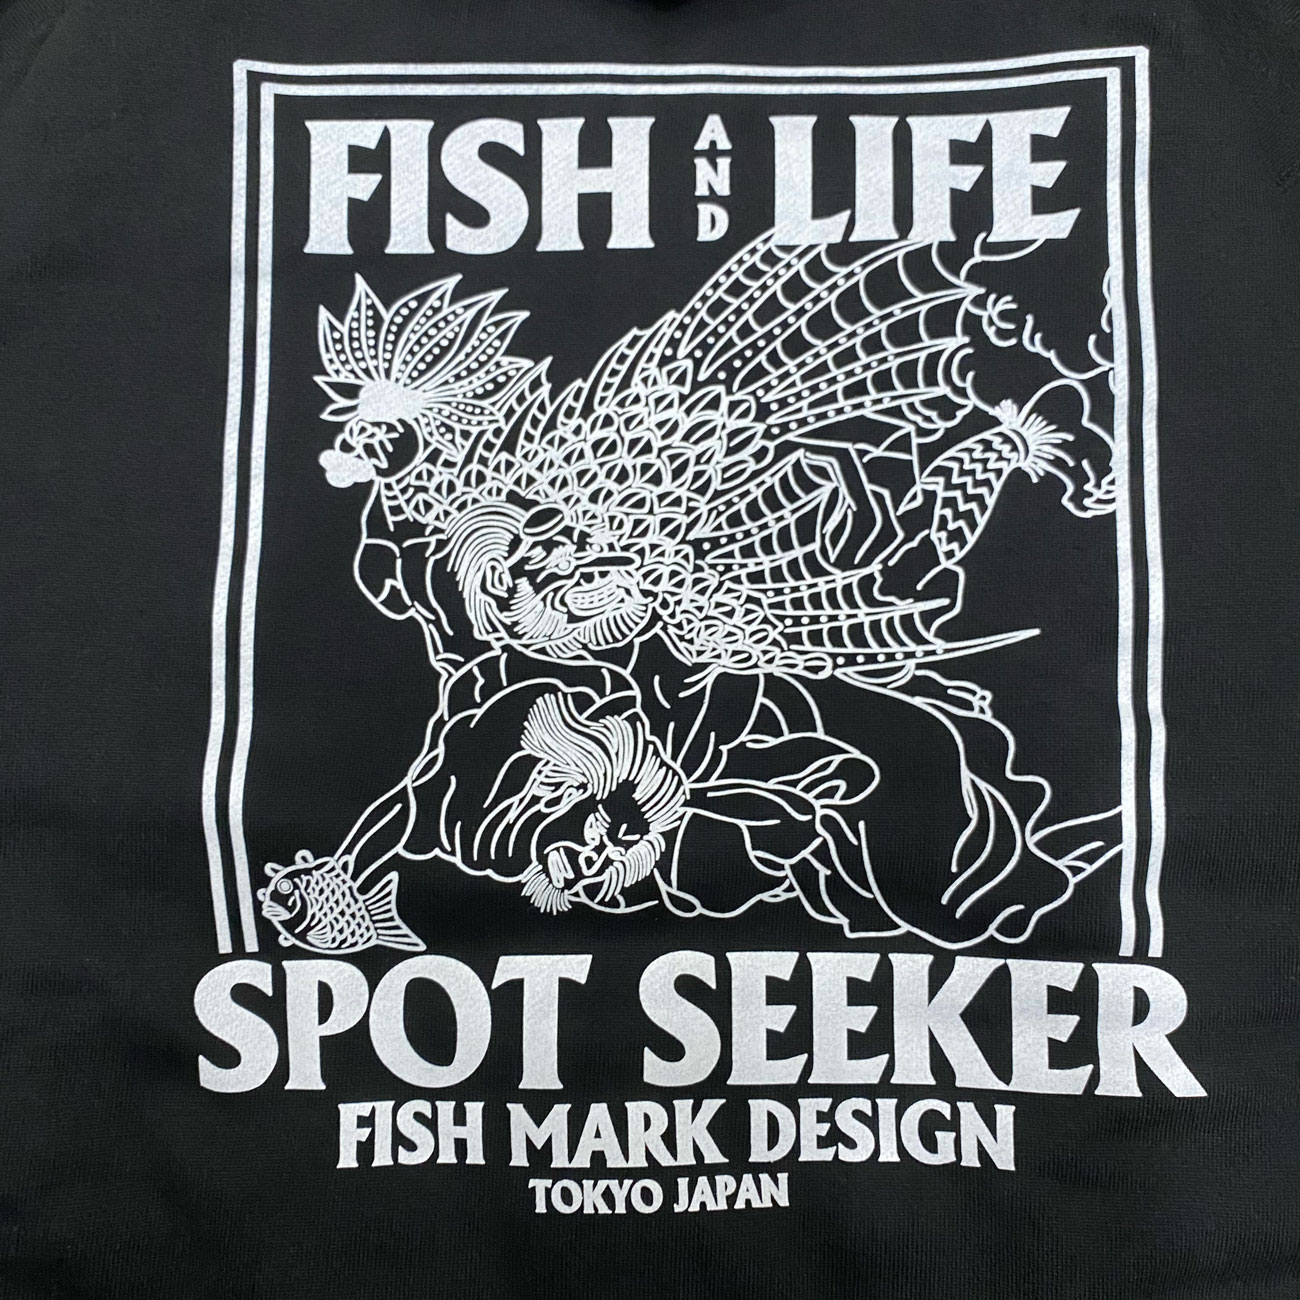 FISH & LIFE SPOTSEEKER No4. ZIP HOODIE